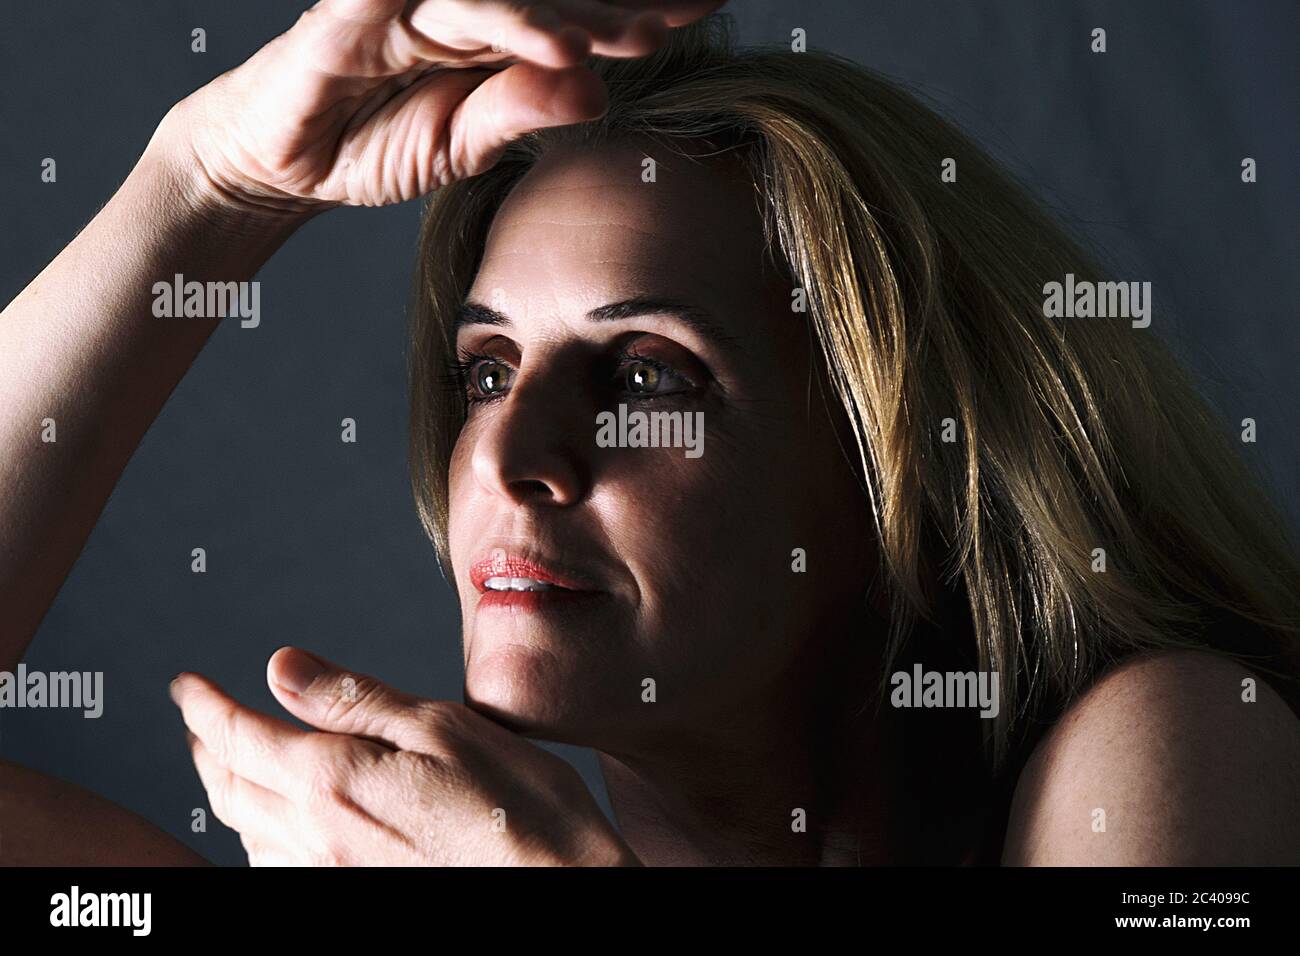 Erwachsene Frau, die mit ihren Händen in der Nähe ihres Gesichts herumspielt Stockfoto